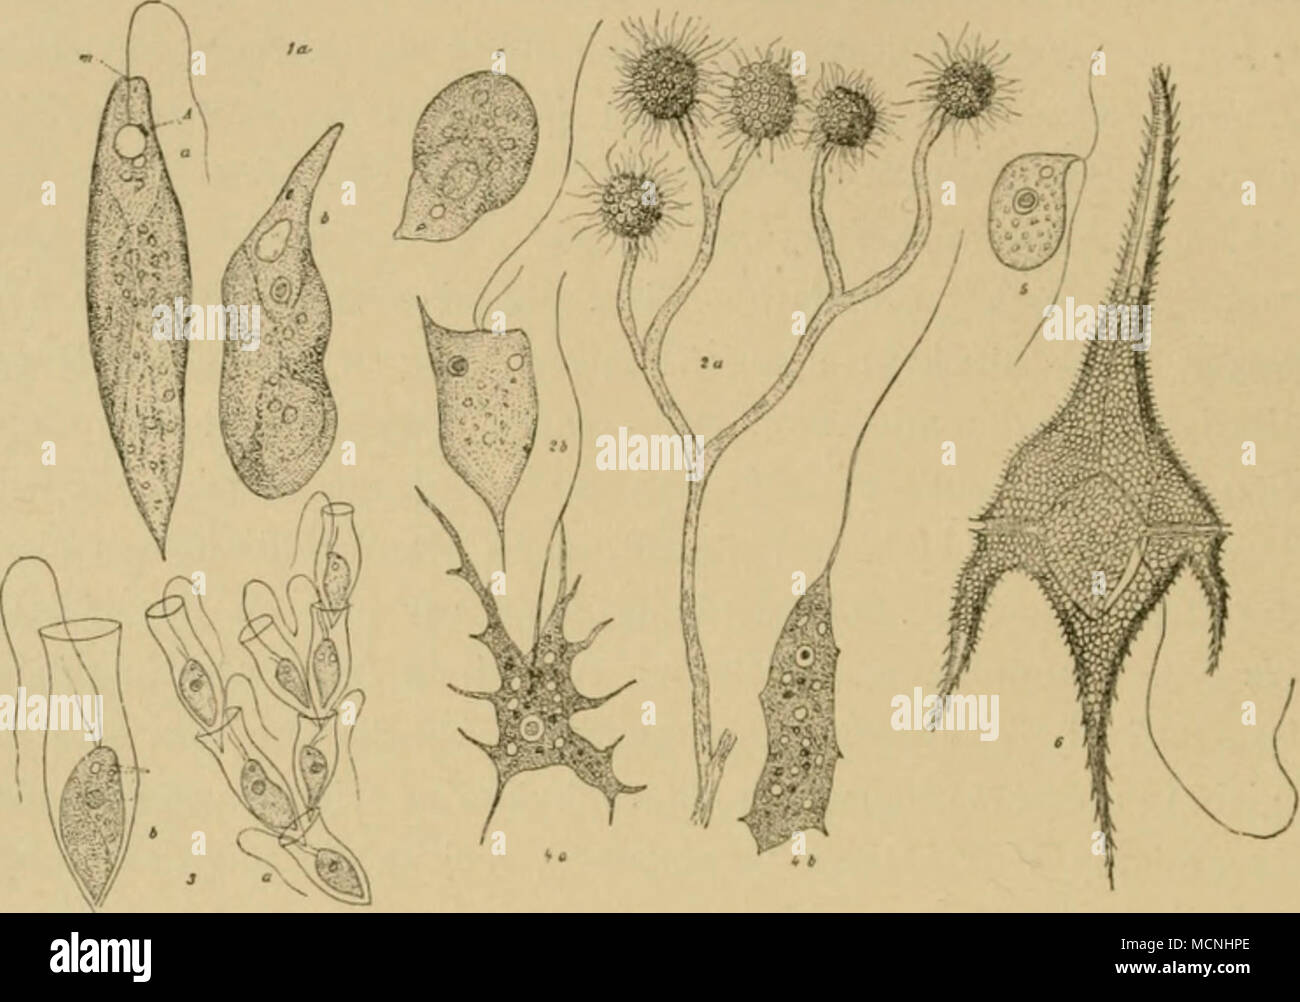 . Fis- 35- I Eitg/ena viridis, a im schwimmenden geisseltragenden, b und c im kriechenden geissel- losen Zustand, A Augenfleck, m ^lundstelle — 2 Anihophysa 7'egda&gt;is, a ein Zweig mit fünf Köpfchen, h ein stark vcrgrössertes Einzelindividuum — 3 Dinobryum Sertularia, a kleine Kolonie, h stärker vcrgrössertes Einzelindividuum — 4 Atastif^anioebn, a in amoeboidem, b in flagellatenartigcm Zustand — 5 Bodo caudafus — 6 Ceratiutn Hirundinella. Sämtlich stark vergrössert. Nahe verwandt der Gattung Euglena ist die Gattung Colacium, jedoch durch ihre Lebensweise von jener verschieden. Die Colacien  Stock Photo